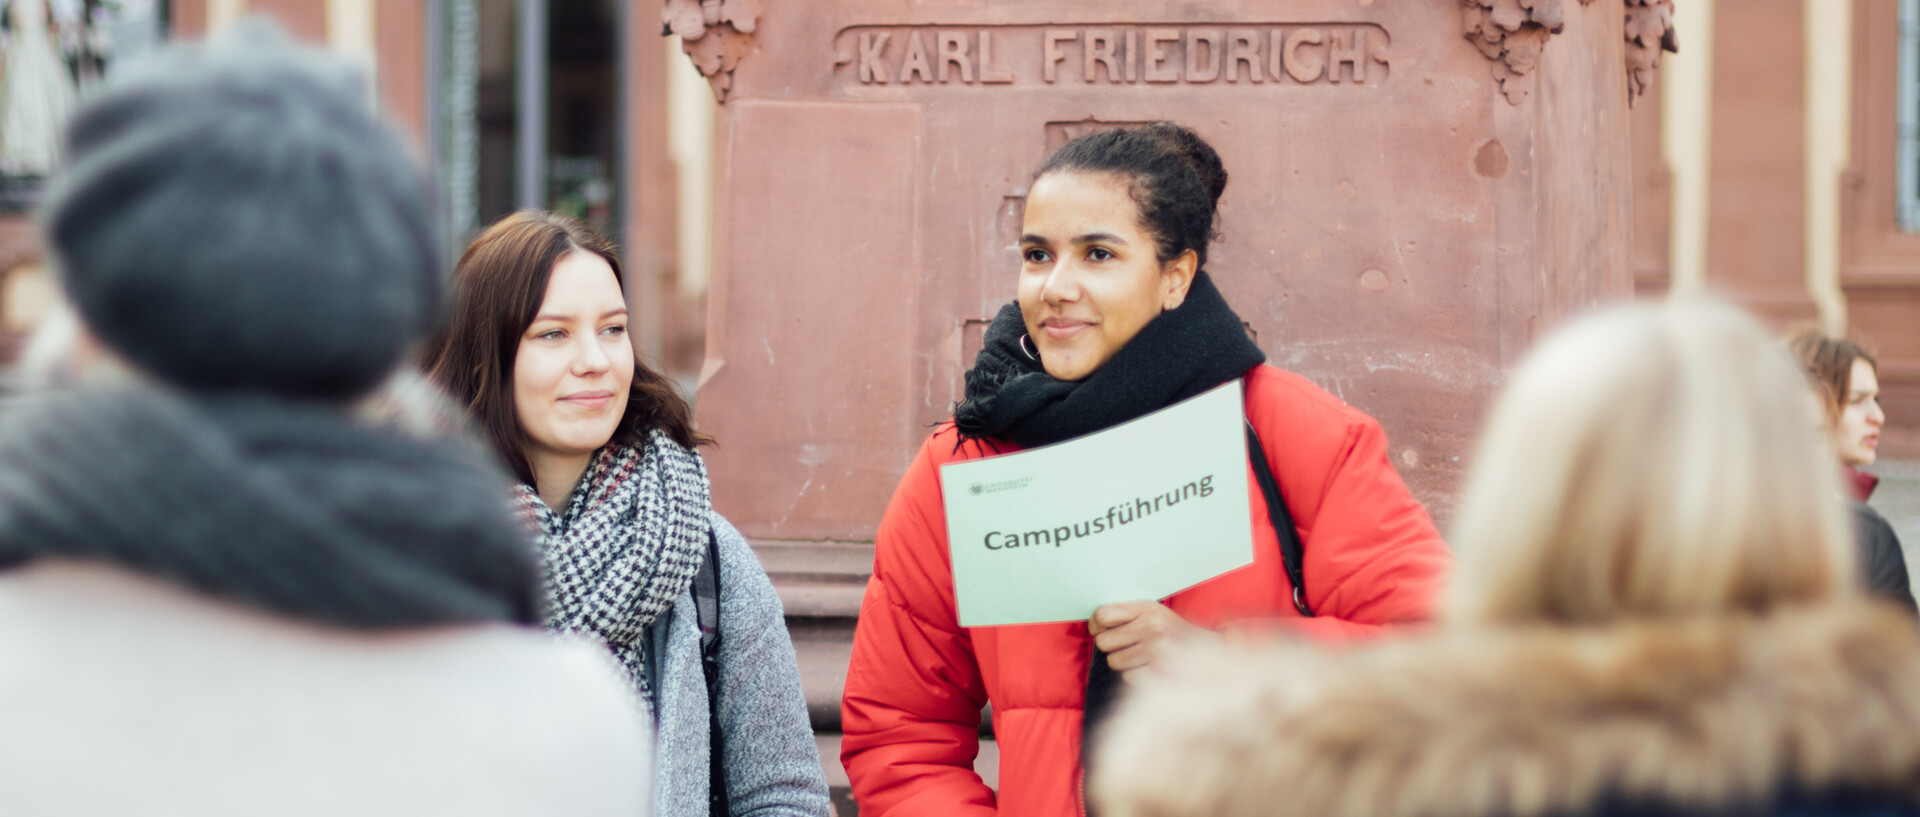 Umringt von Studierenden hält eine Campusführerin vor dem Denkmal Karl Friedrichs auf dem Ehrenhof ein Schild mit der Aufschrift Campusführung